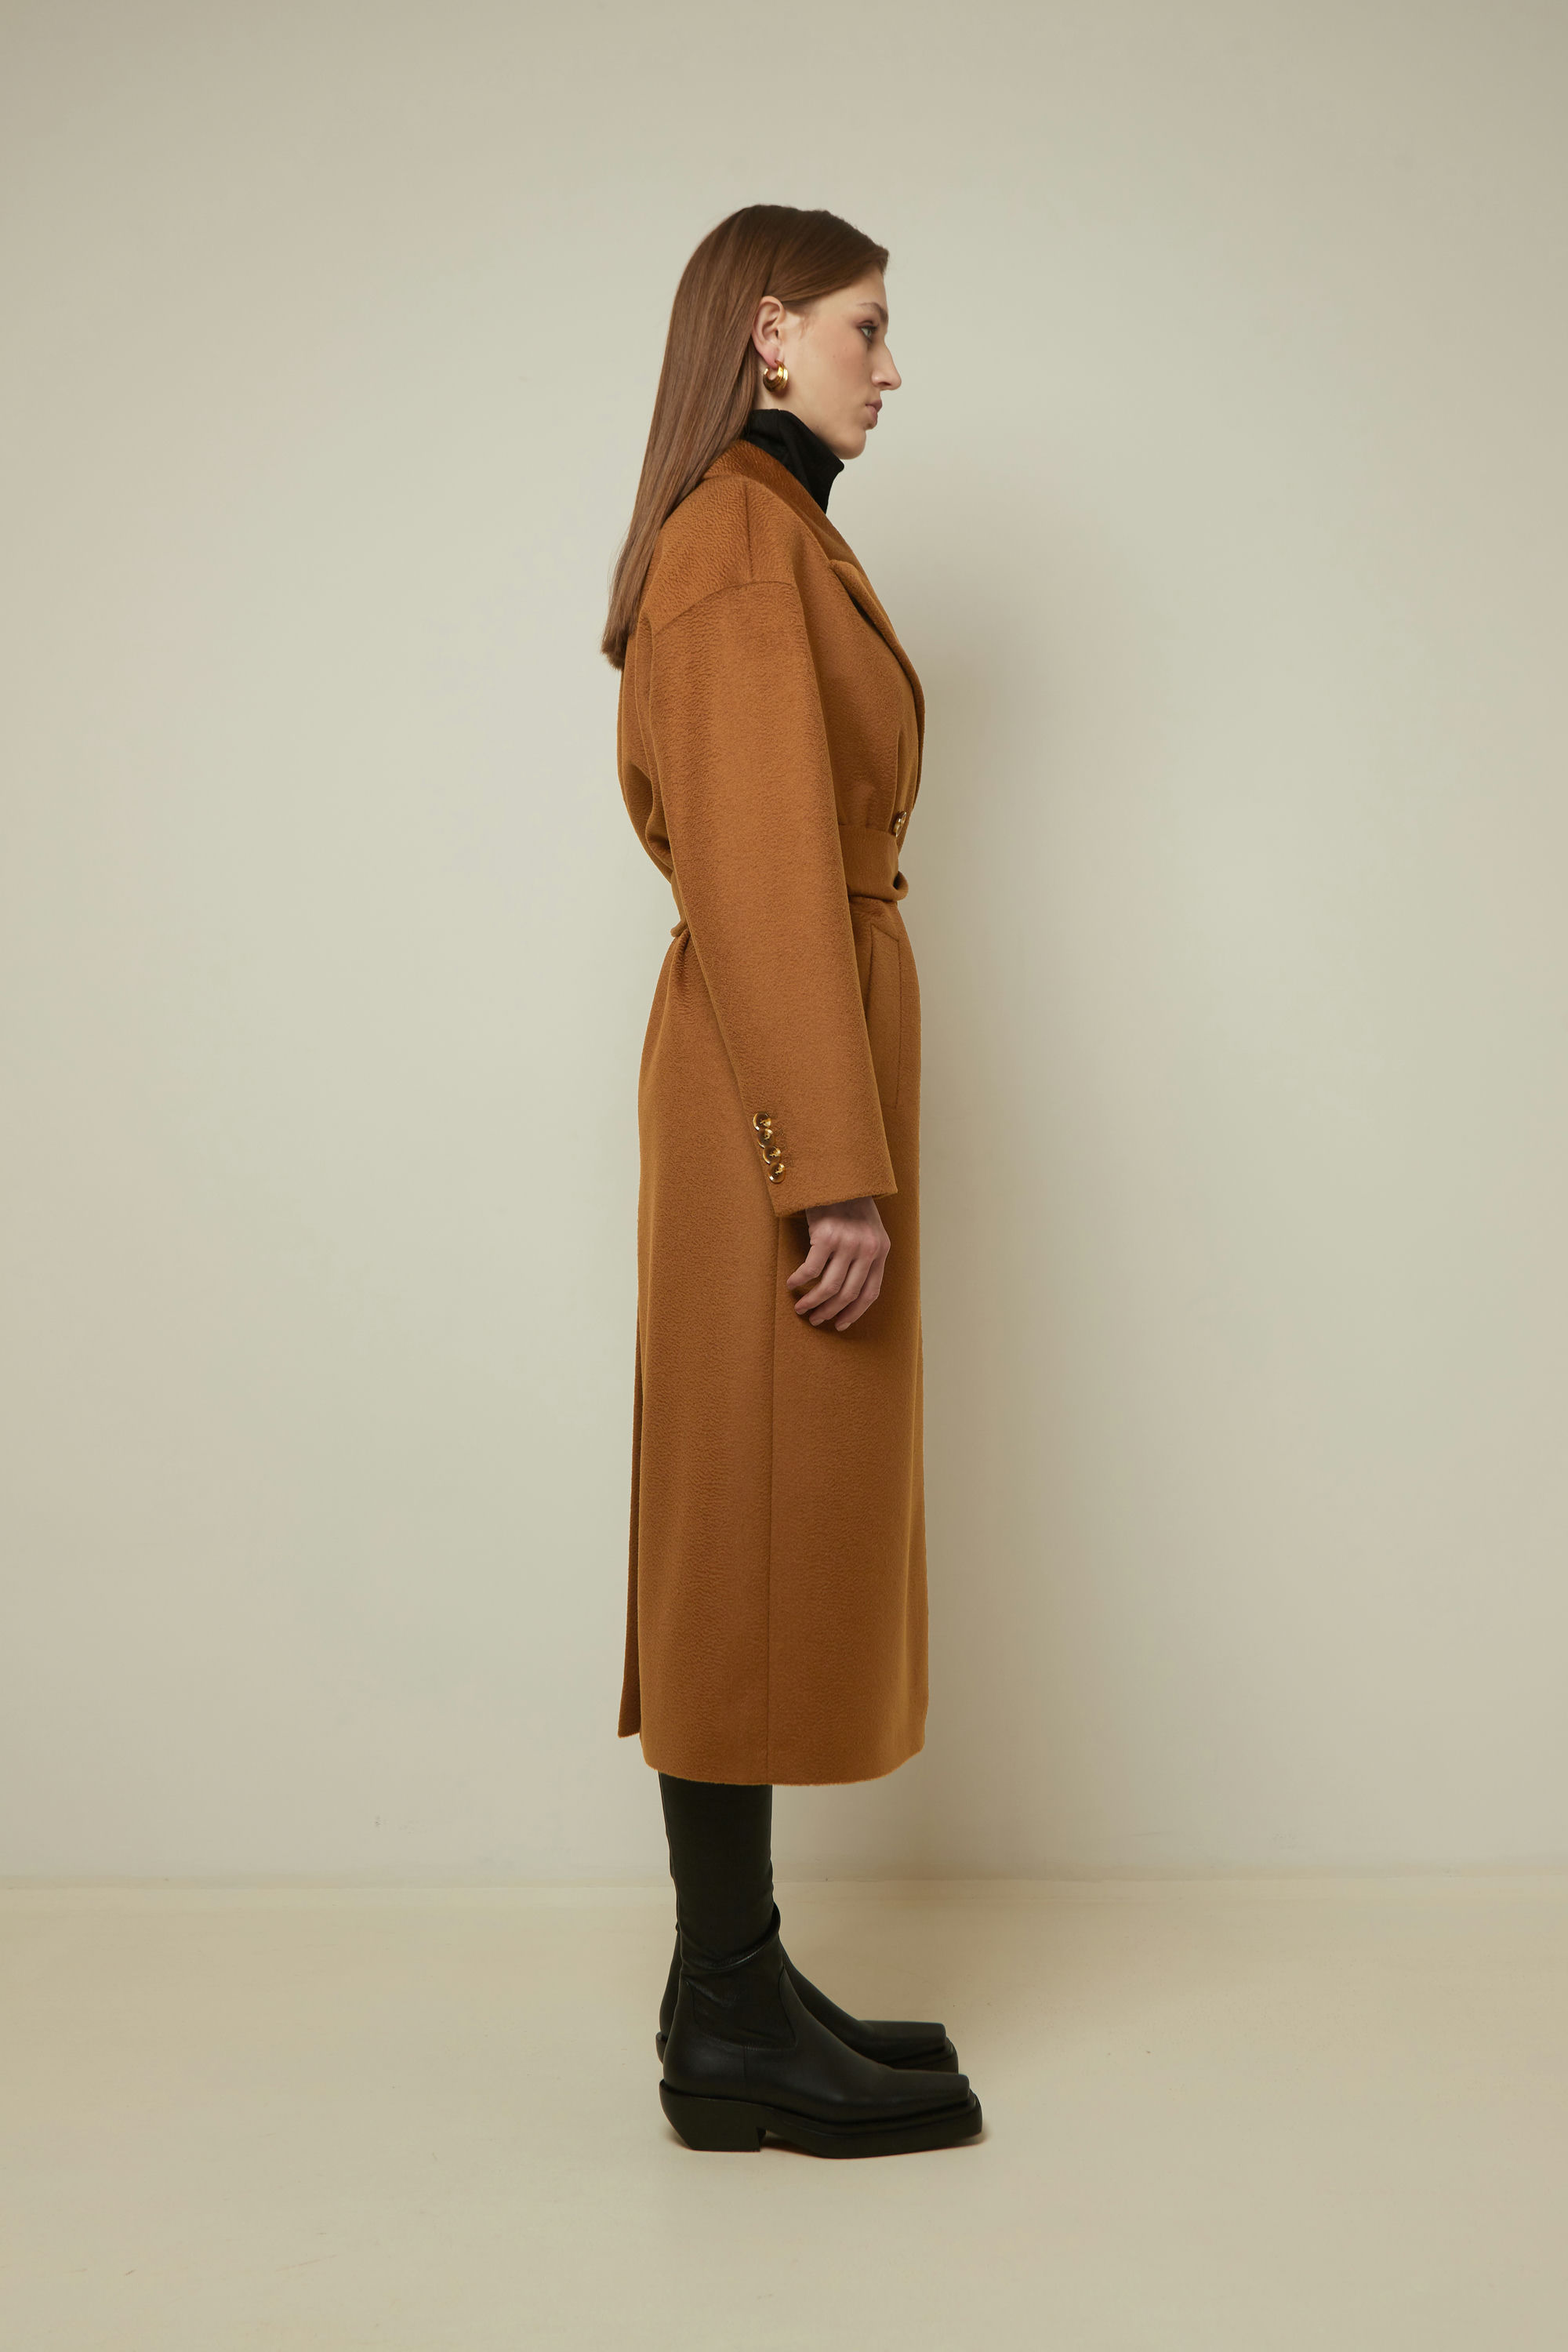 Пальто женское демисезонное 1-13140-1. Фото 2.